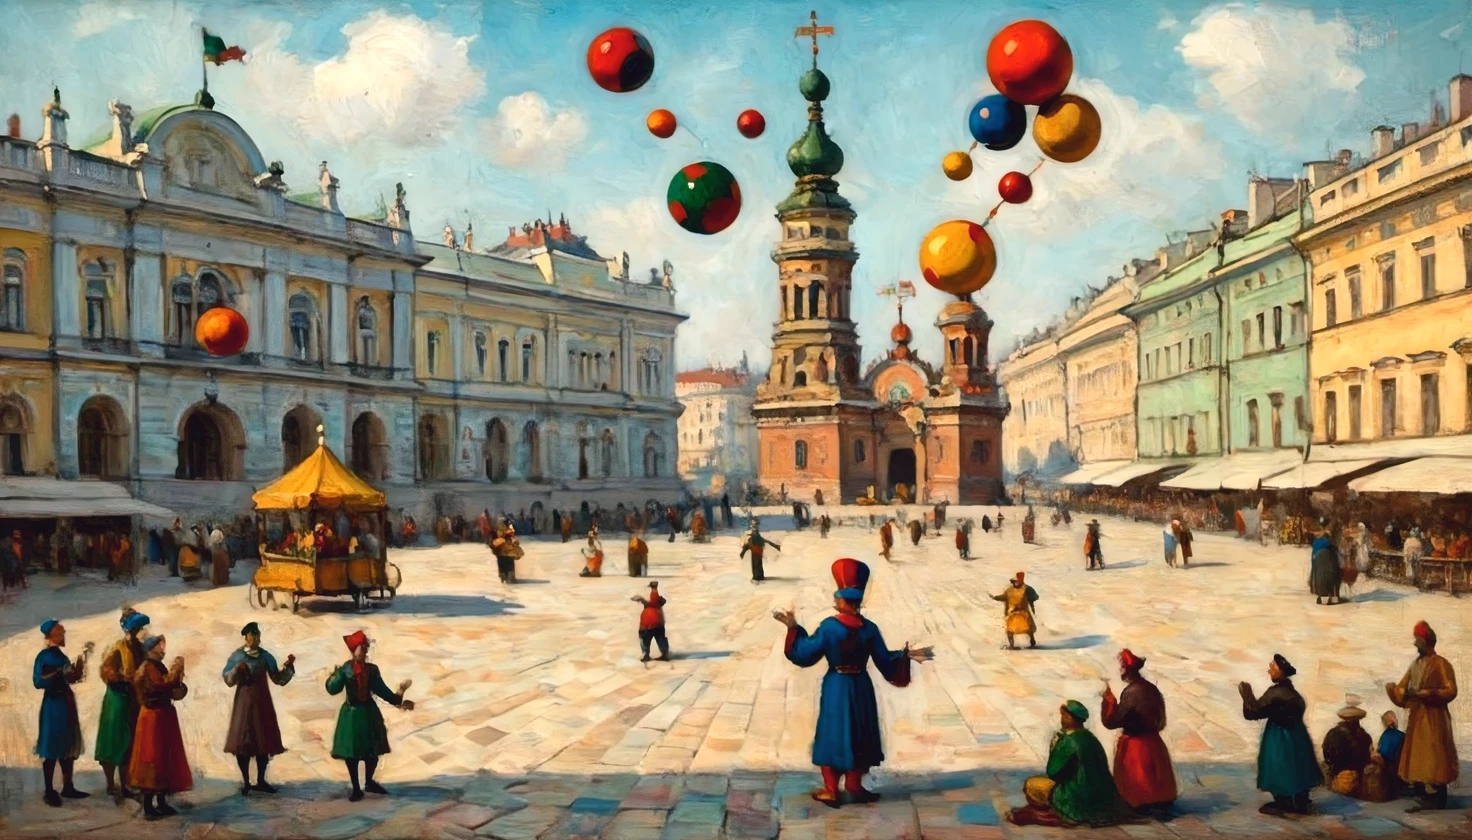 芸術家ワシリー・カンディンスキーによるキャンバスの油絵, ((道化師)) 聖パレス広場にある. ピーターズバーグ, 道化師 (ジャグリング):1.5つの多色ボール, multi-colored balls rotate around 道化師, ワシリー・カンディンスキーのスタイルに完全準拠